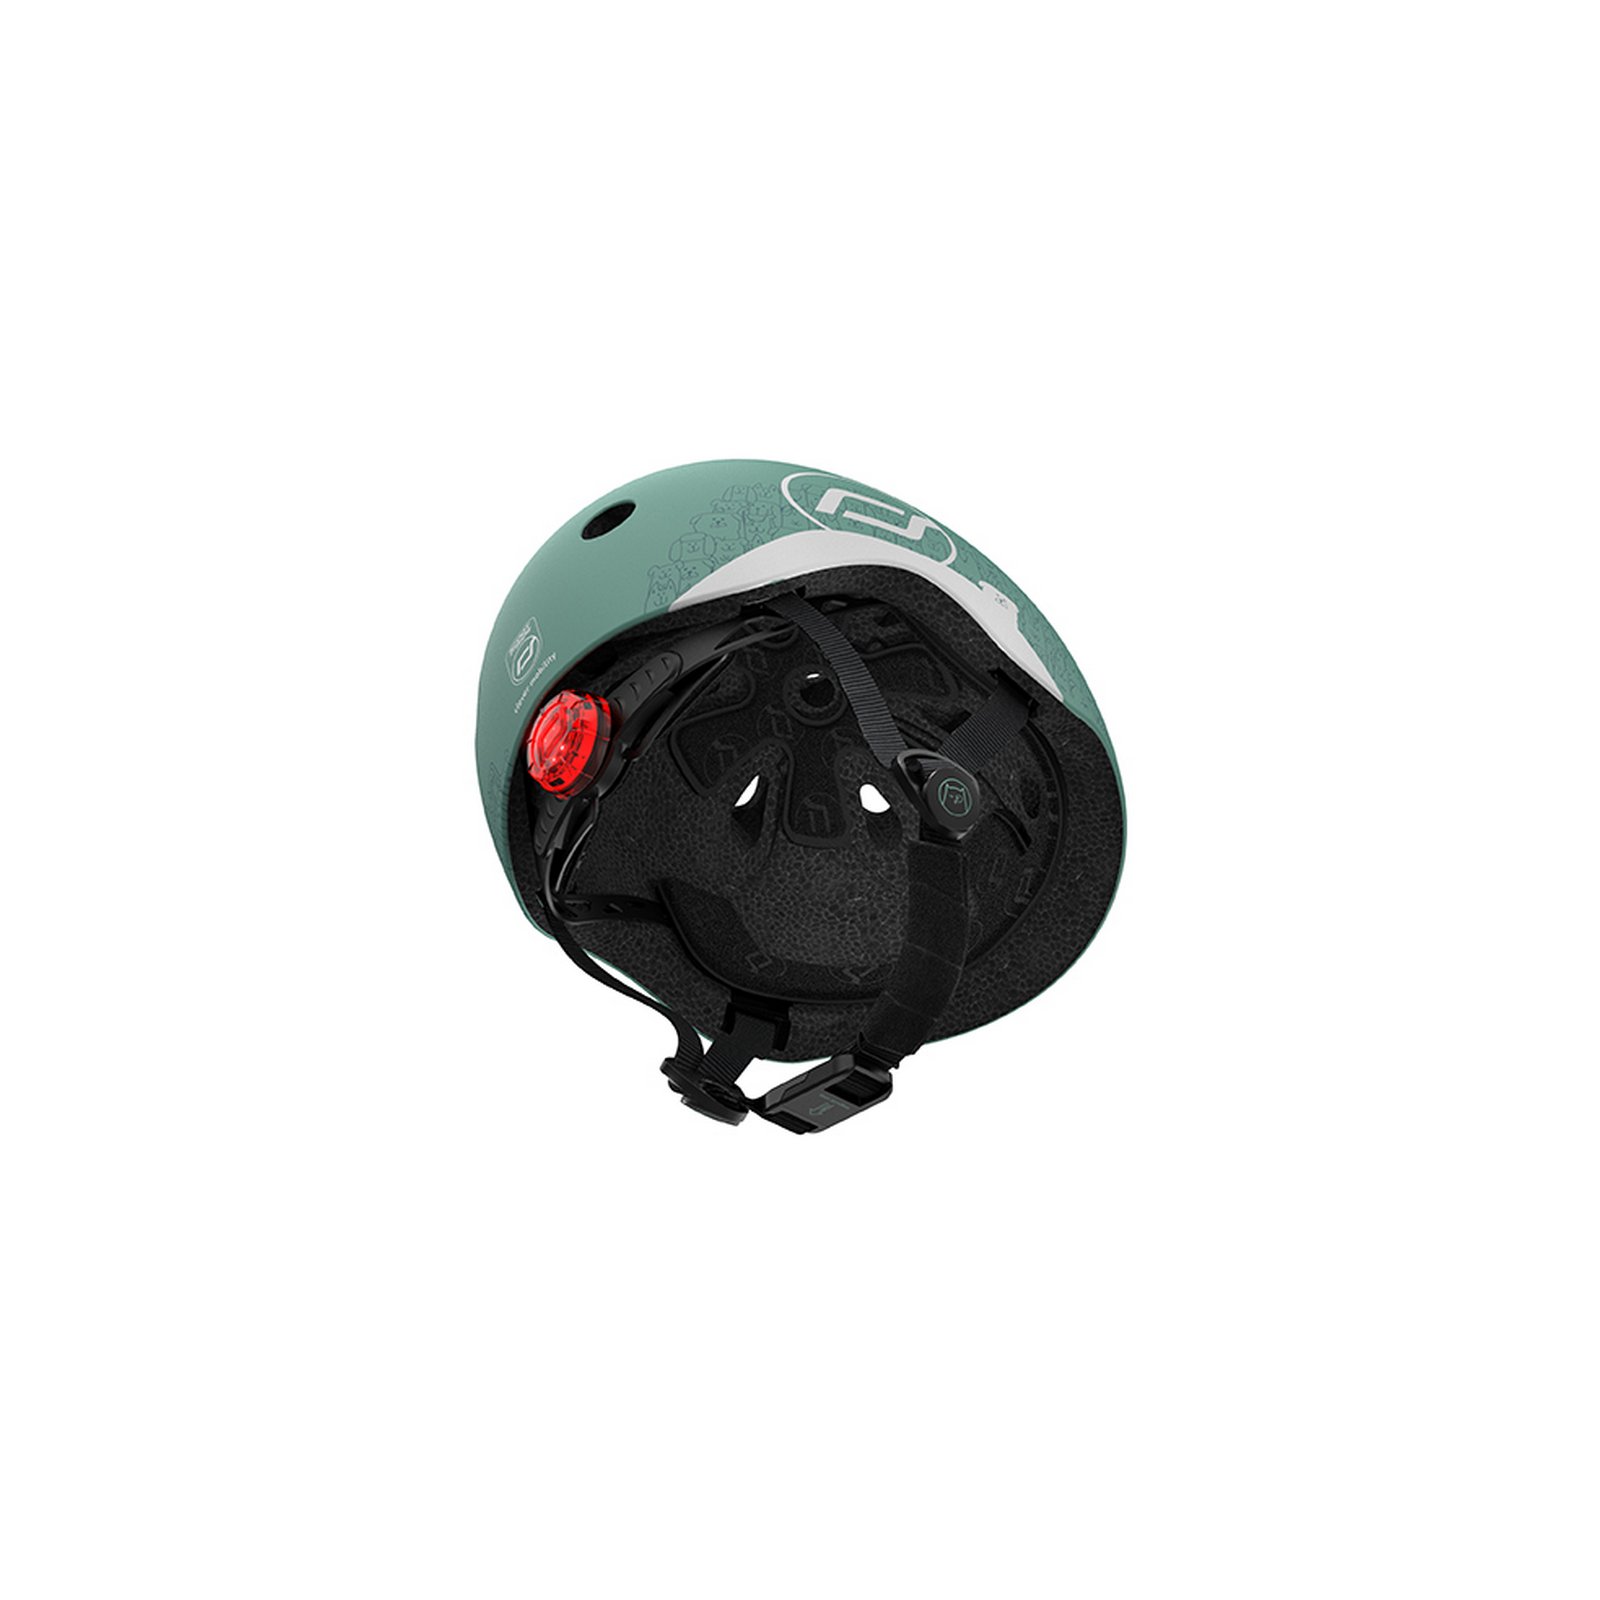 Шлем защитный Scoot and Ride светоотражающий, с фонариком, 45-51 см (XXS/XS), серо-зеленый (SR-210225-FOREST) - фото 7